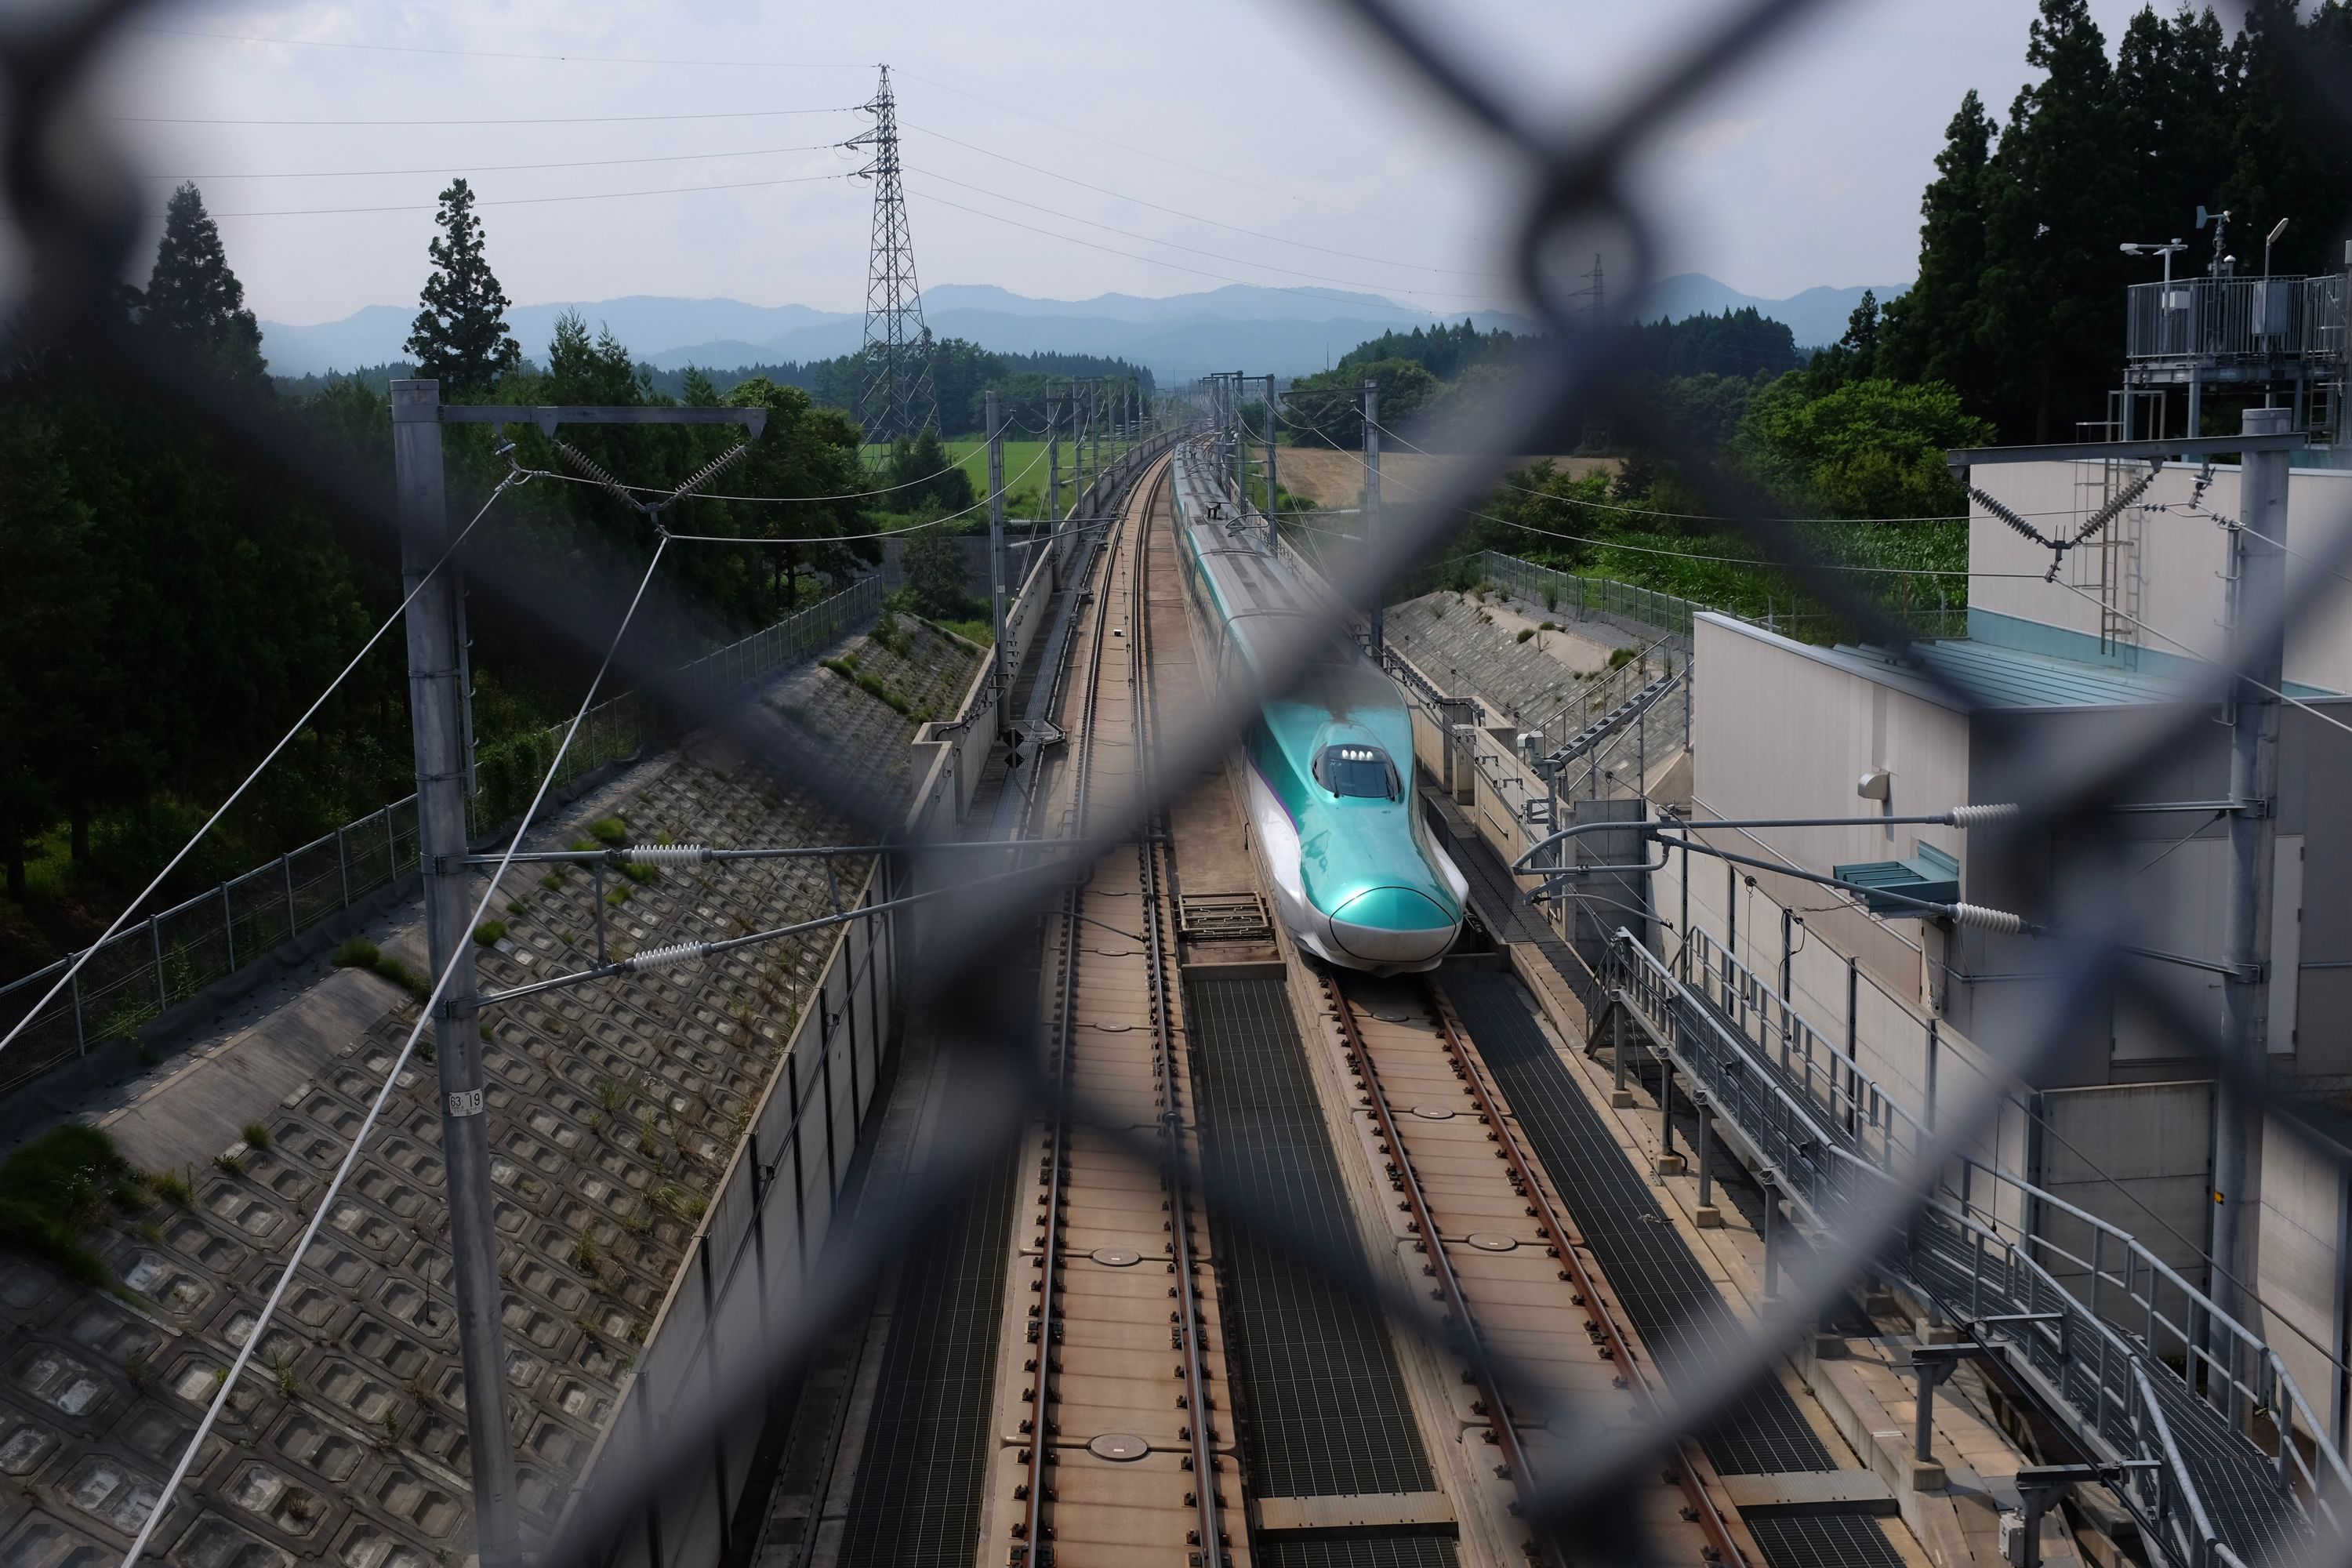 A light blue superexpress train, the Hokkaido Shinkansen, as seen from behind the fence of an overpass.